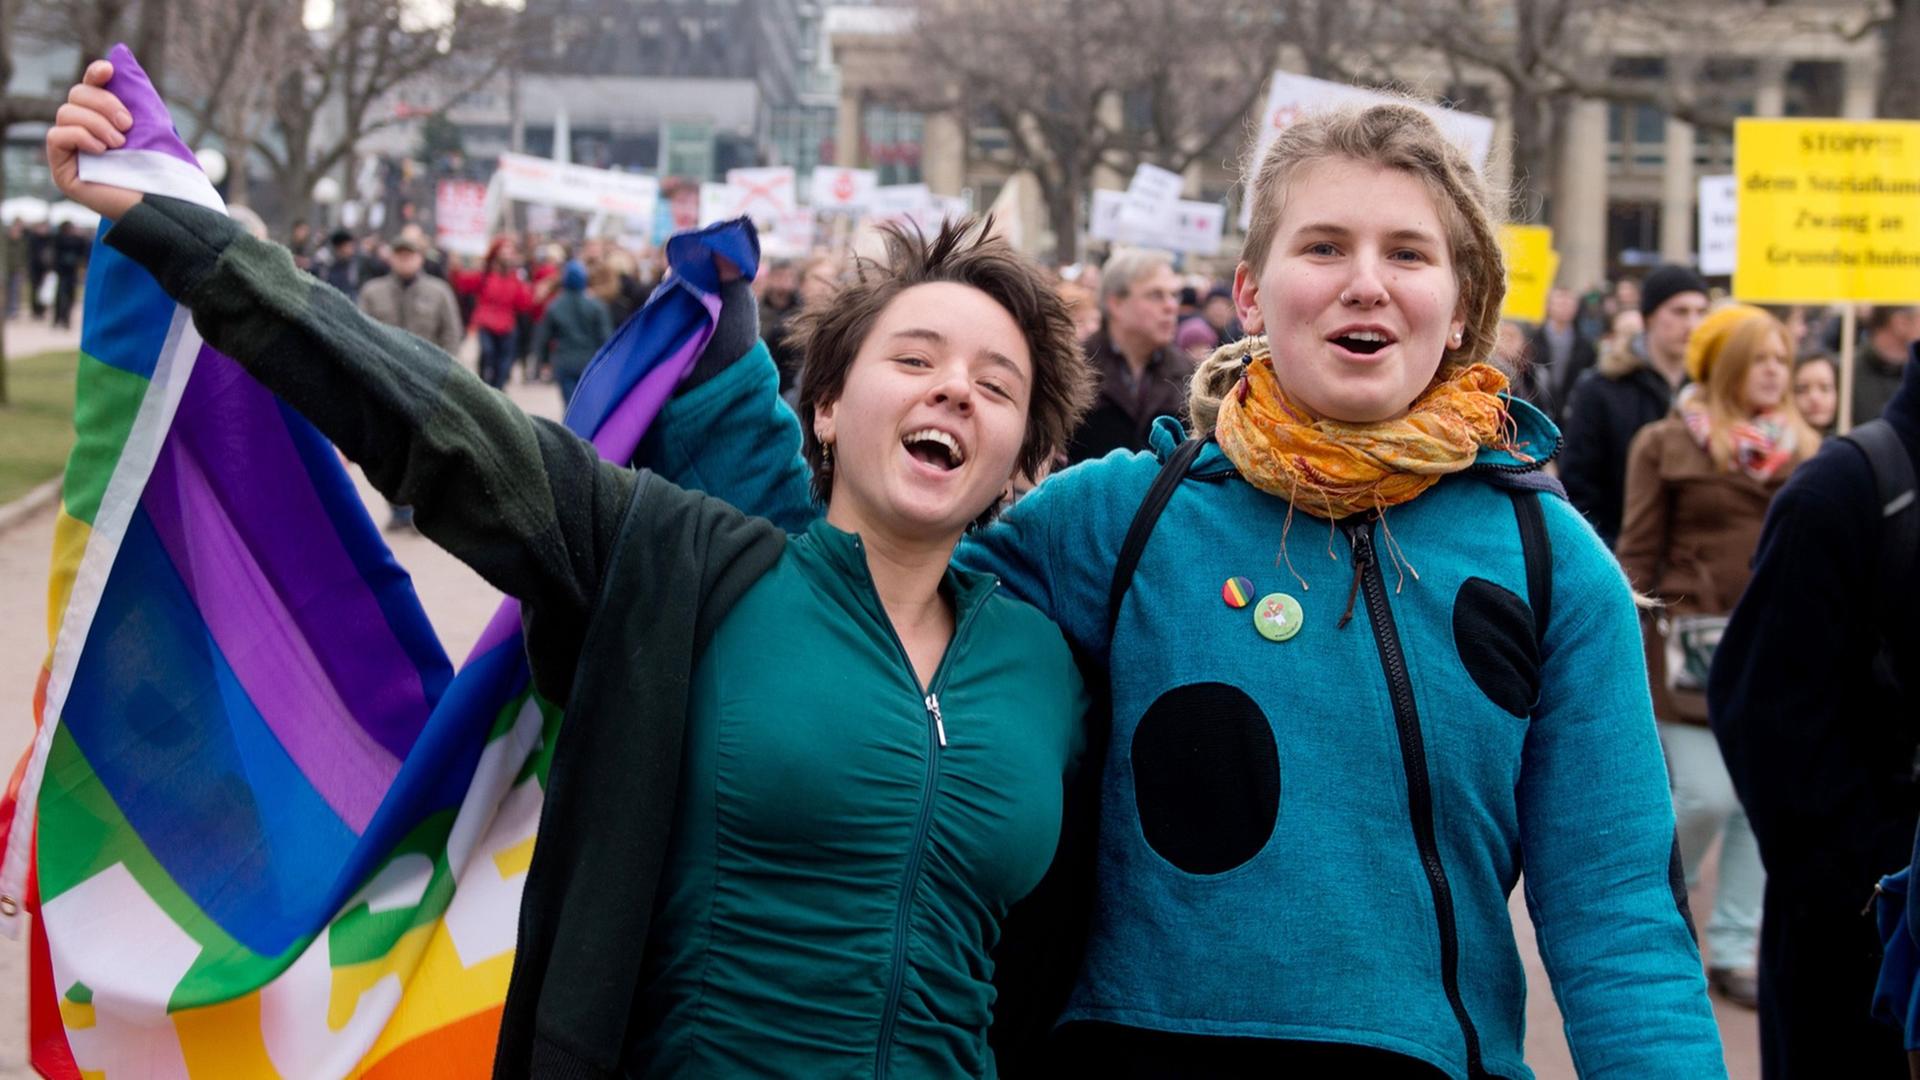 Zwei Befürworter der Aufwertung des Themas Homosexualität im Schulunterricht in Baden-Württemberg gehen am 01.02.2014 bei einer Demonstration in Stuttgart (Baden-Württemberg) über den Schlossplatz, in der Hand eine Regenbogenfahne.